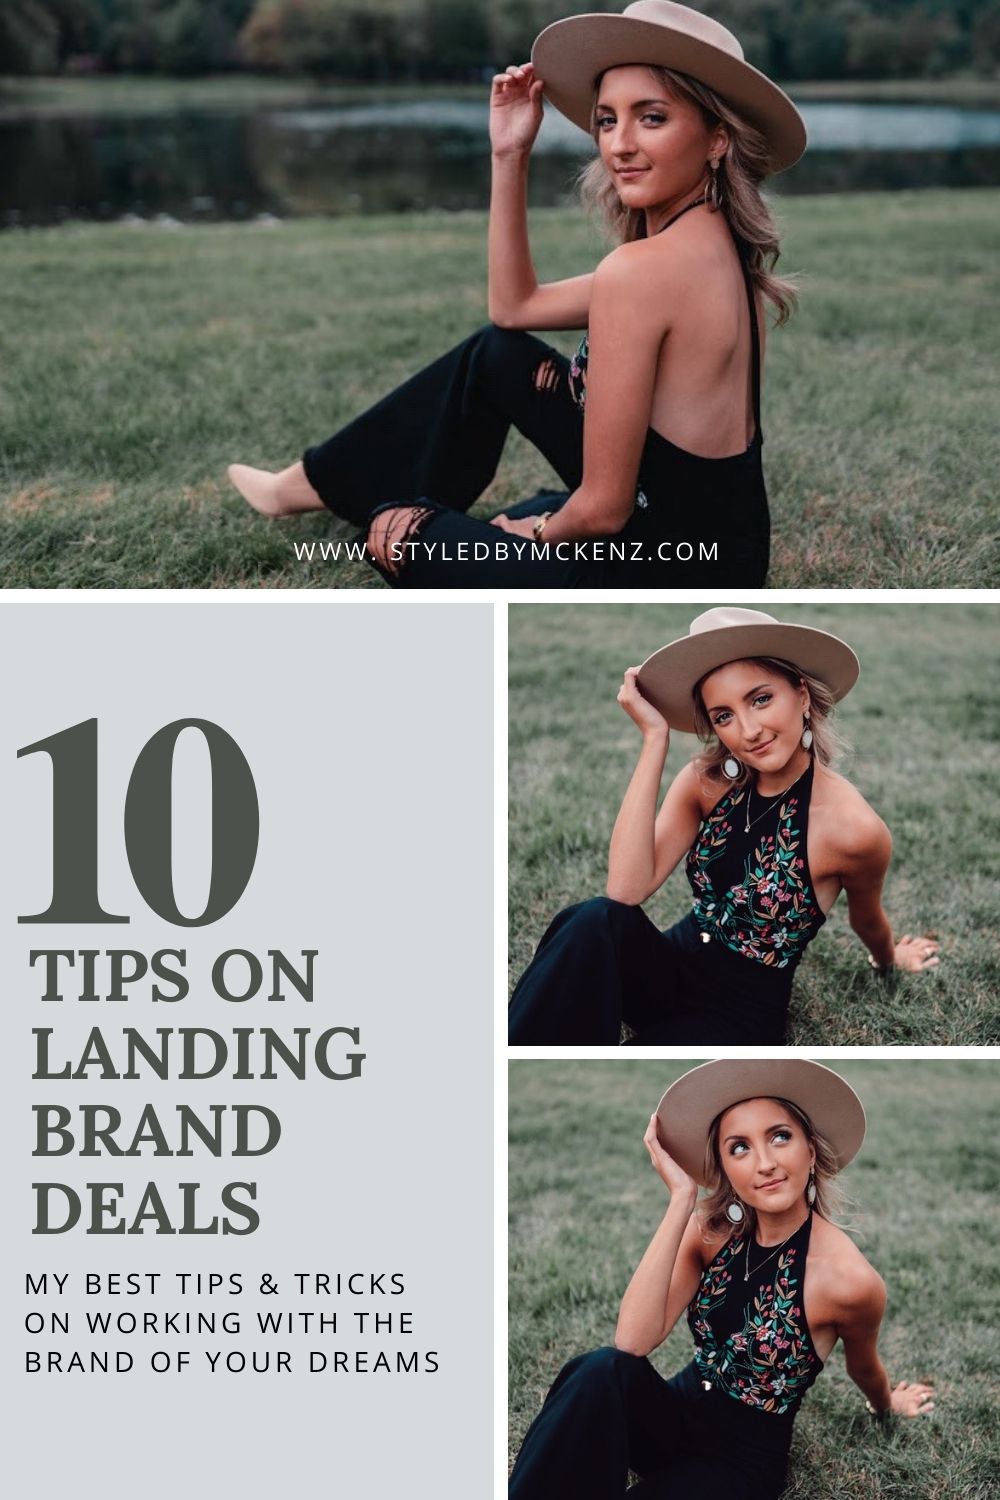 My Top 10 Tips On Landing Brand Deals